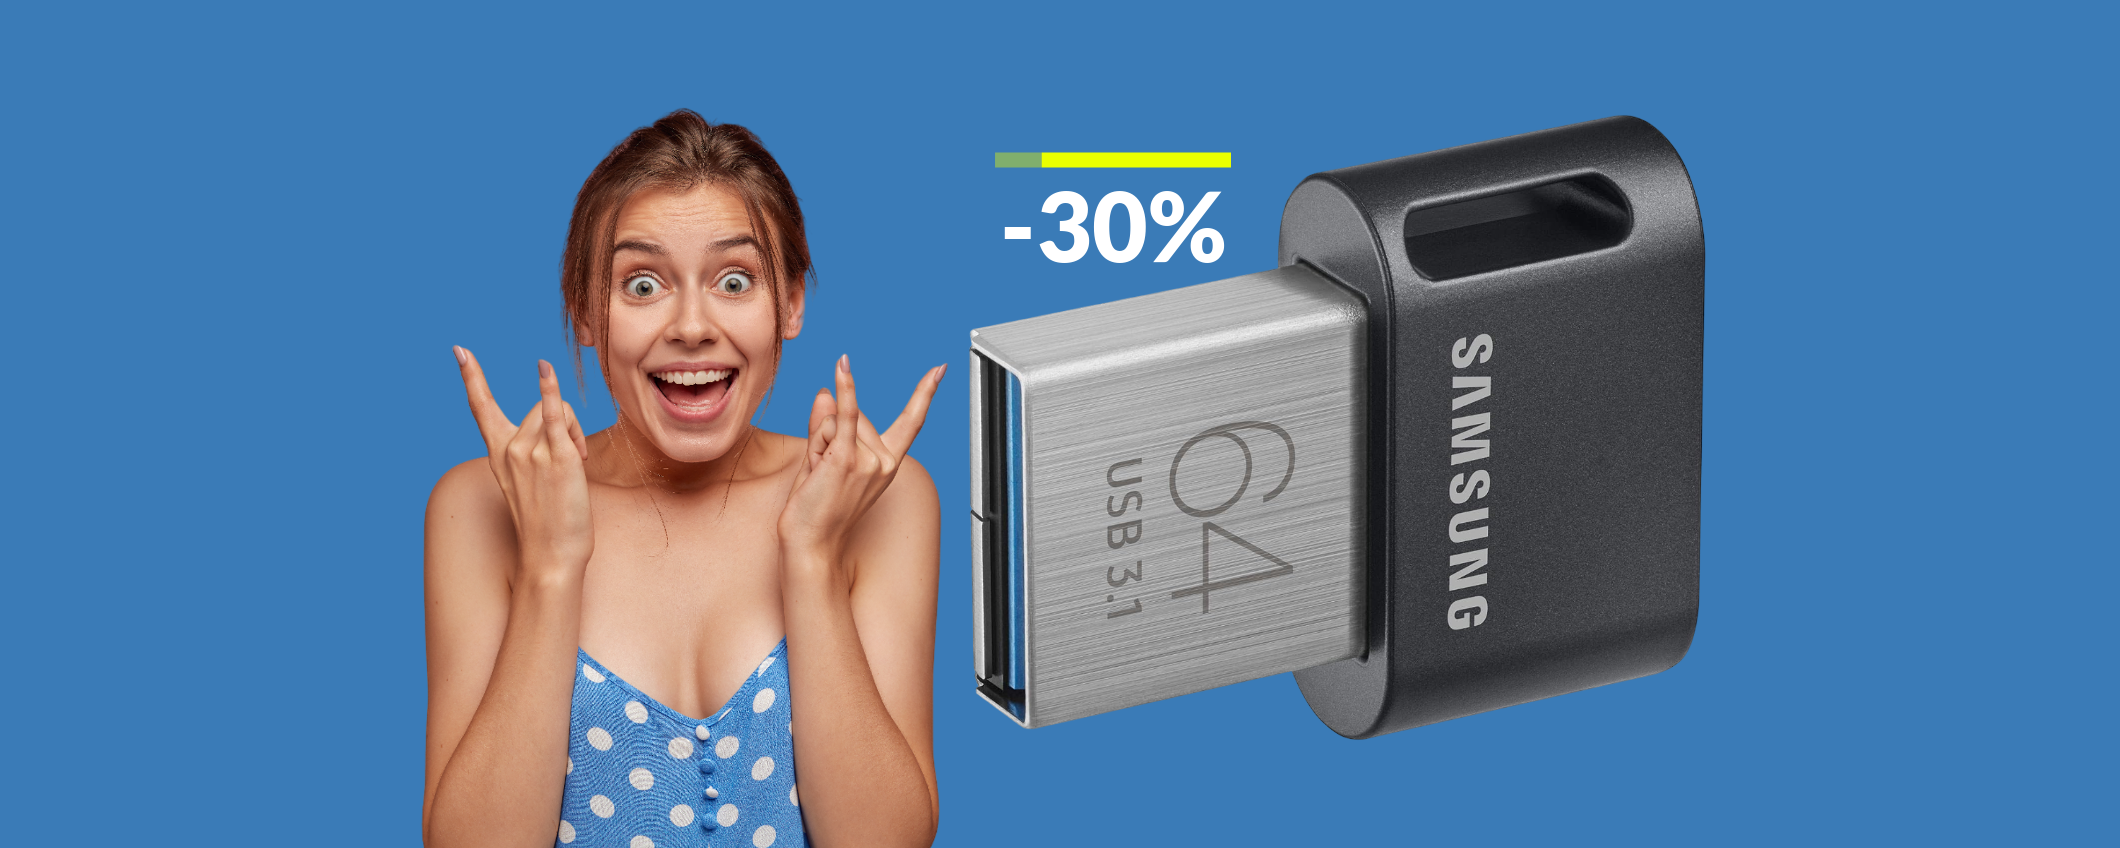 Micro chiavetta USB Samsung dalla velocità spaventosa: solo 13€